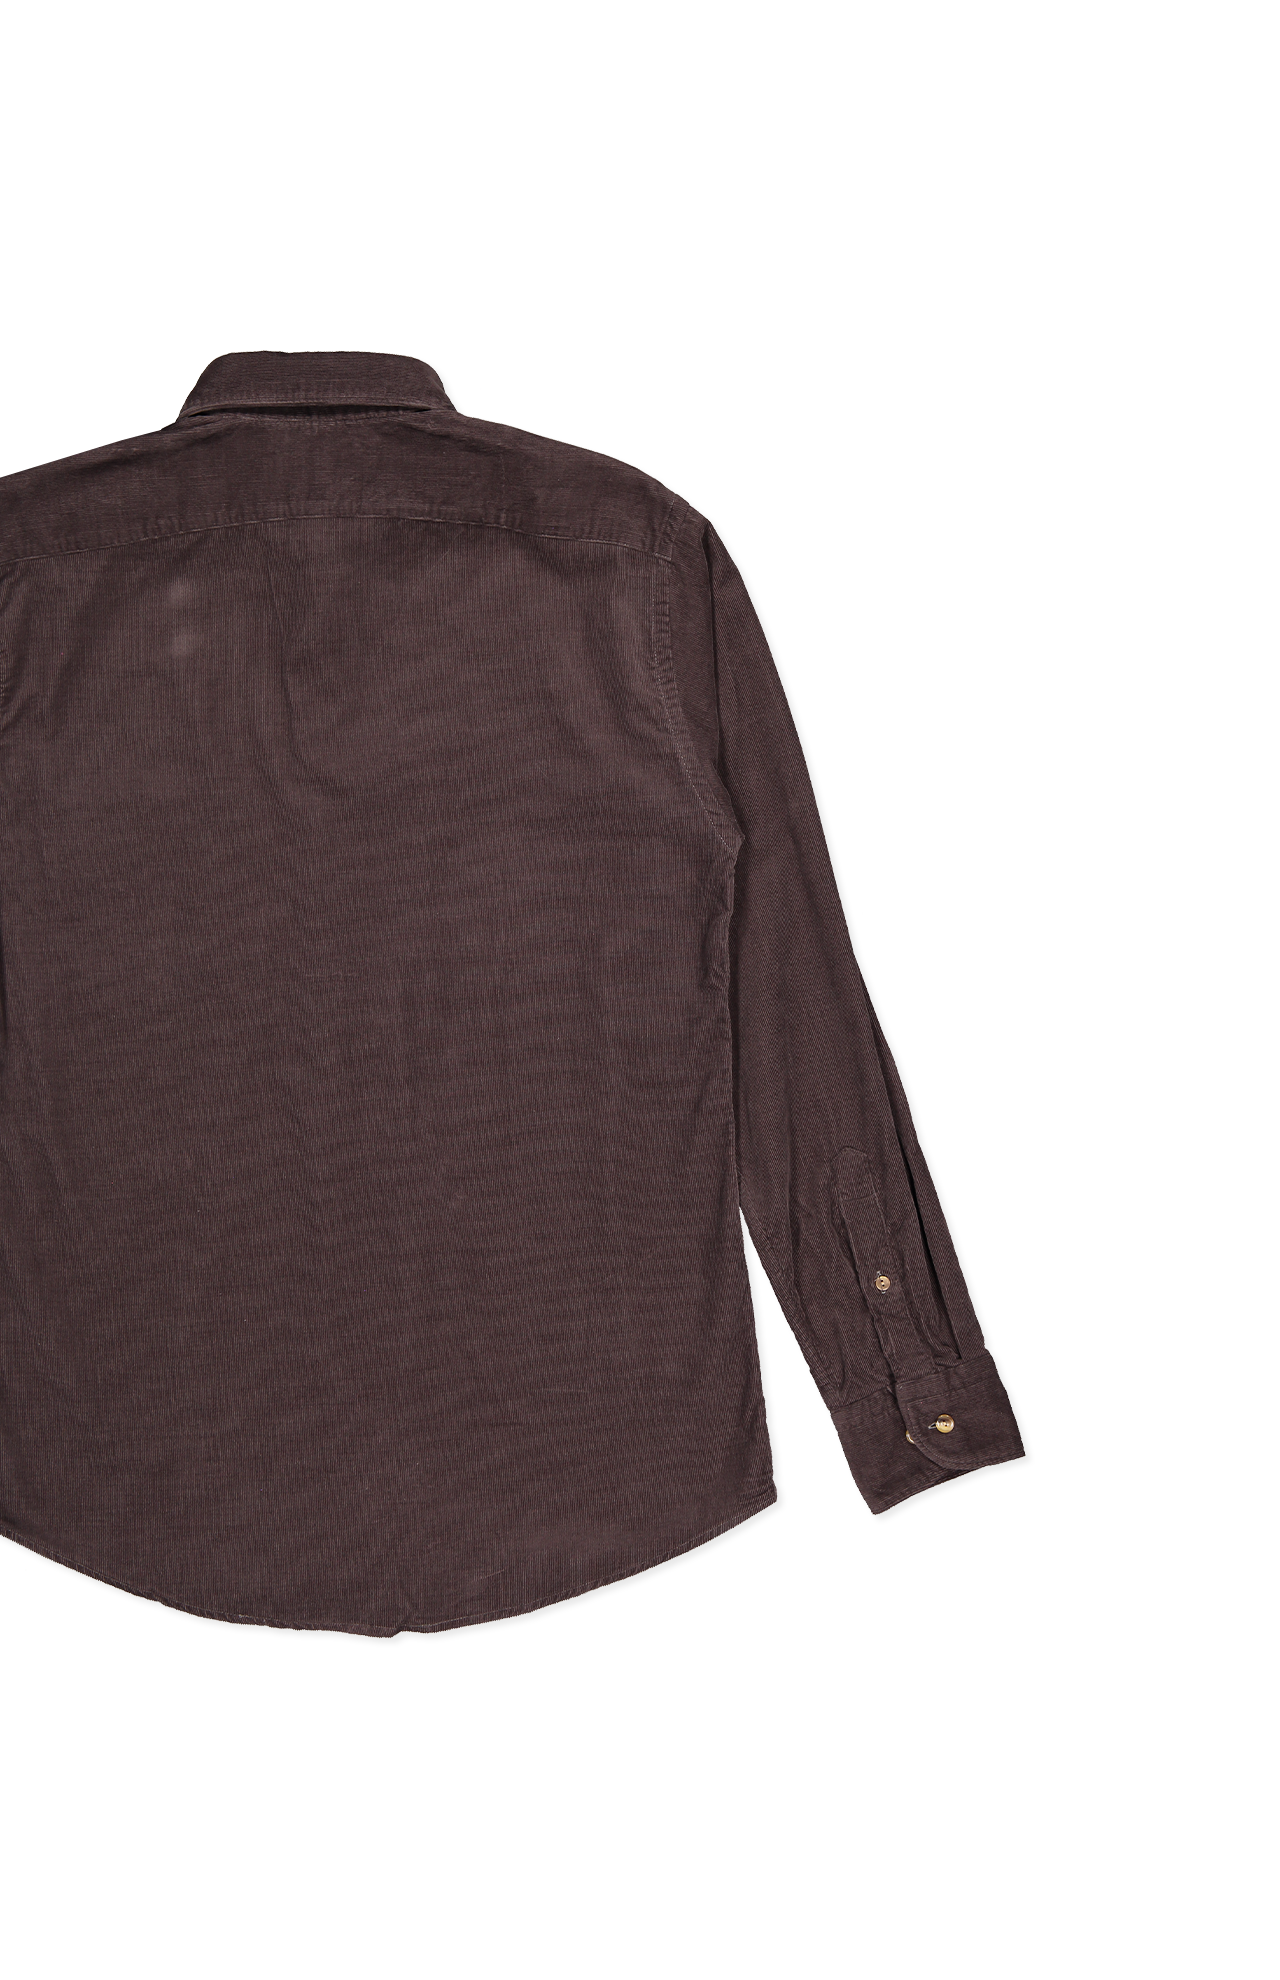 Eton Babycord Shirt Dark Brown Back Flat Lay Image (6919758250099)